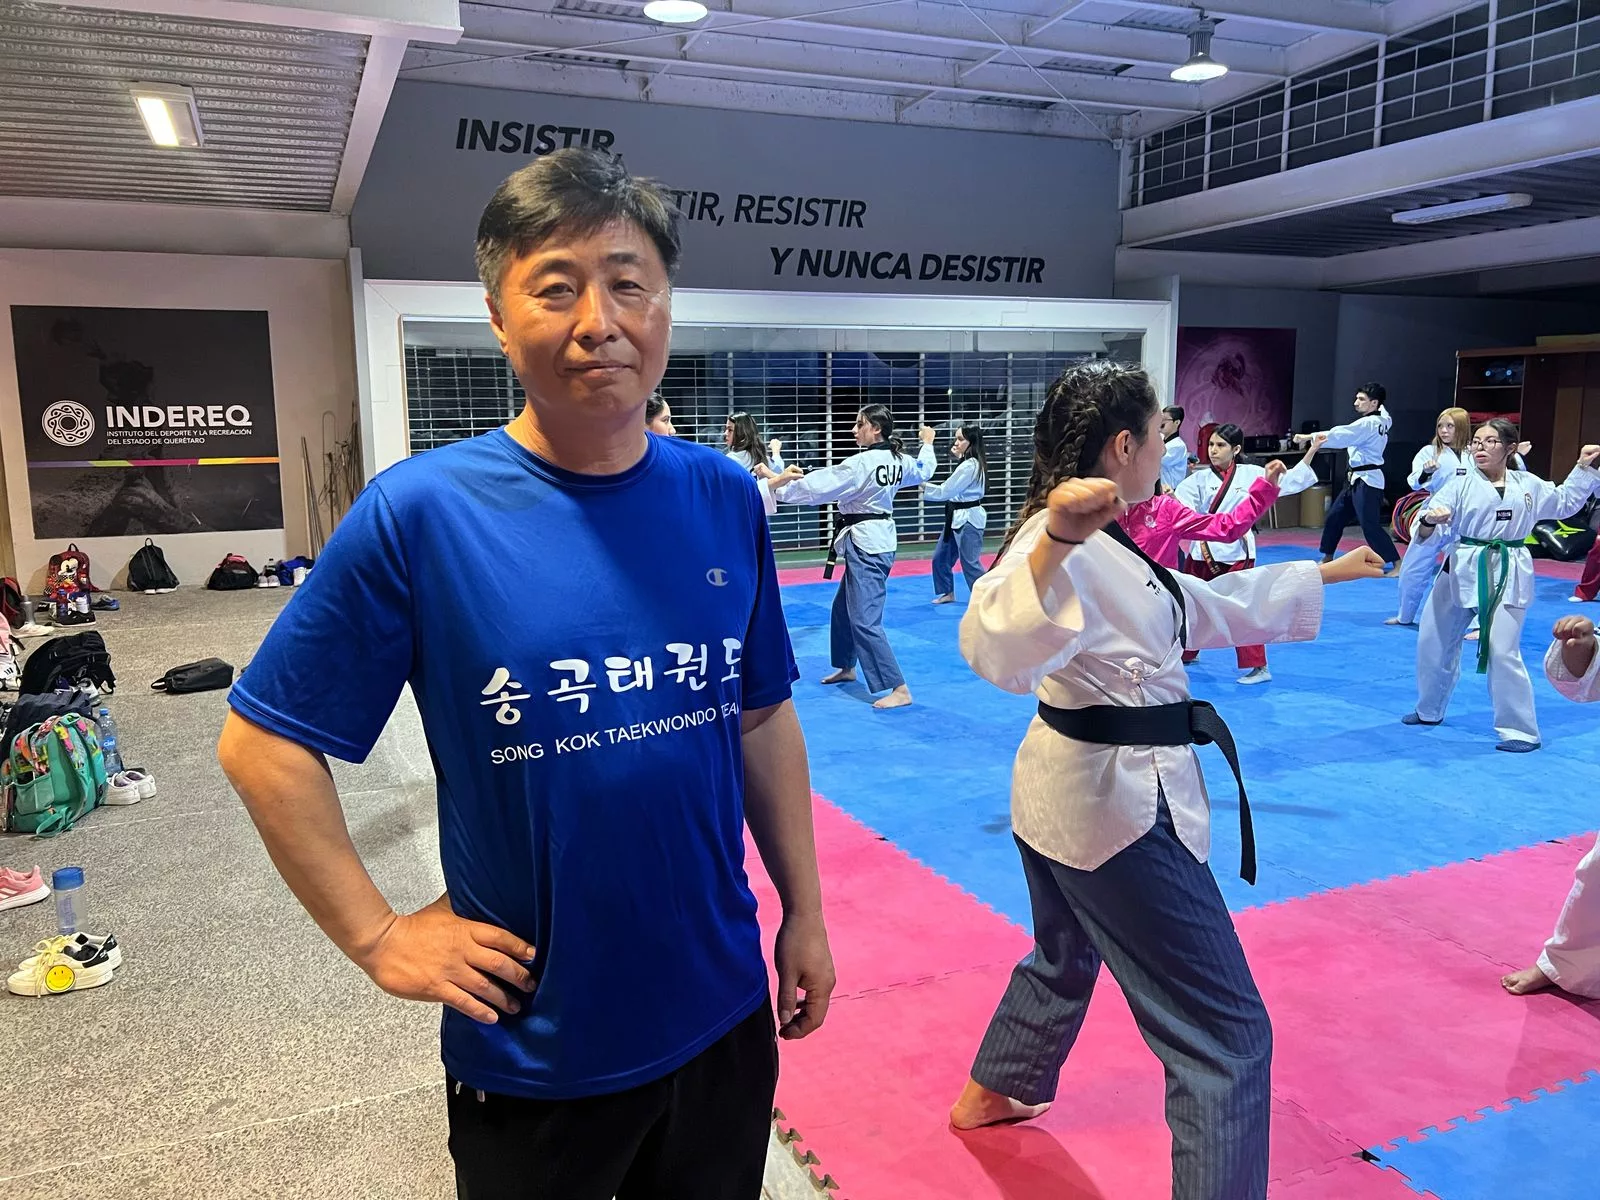 El Taekwondo en Querétaro: Crecimiento notable bajo la Dirección del Maestro Sang Jong Moon